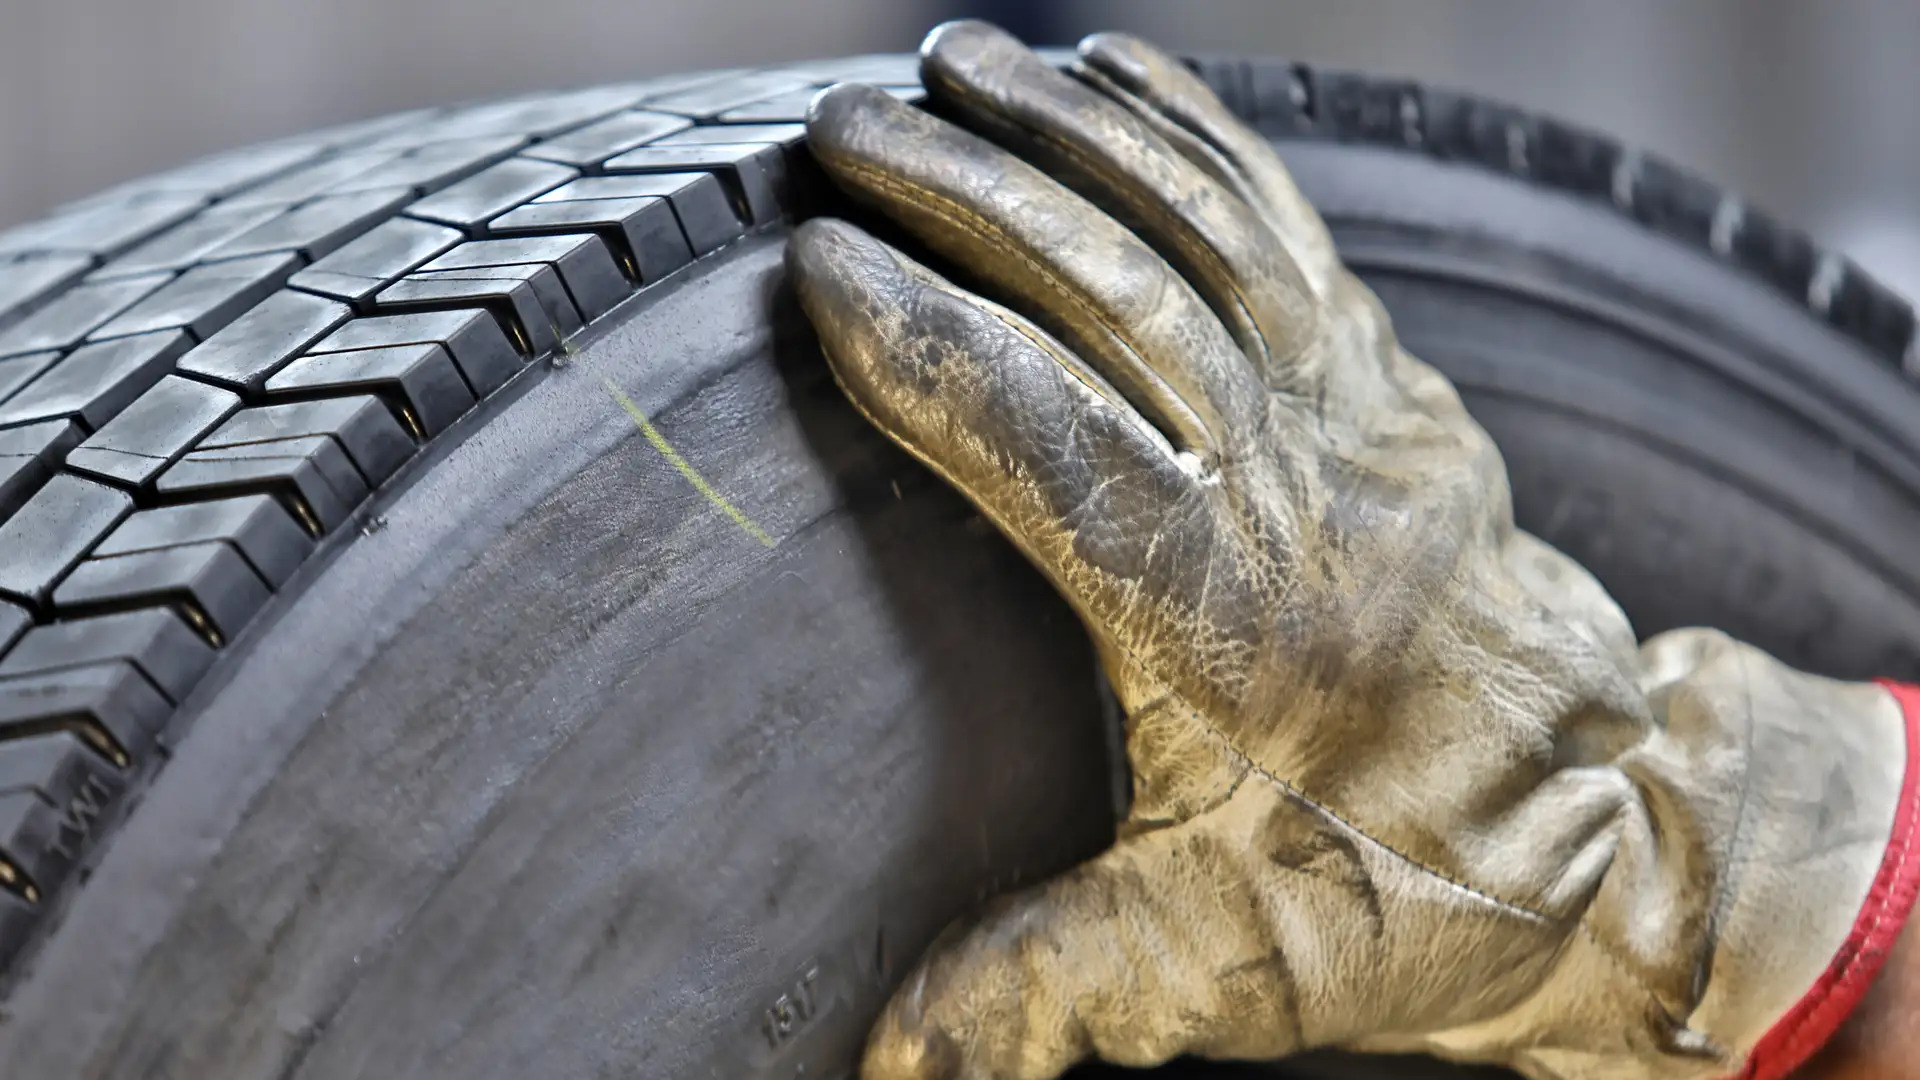 Saiba a diferença entre pneu recapado, recauchutado e remoldado?